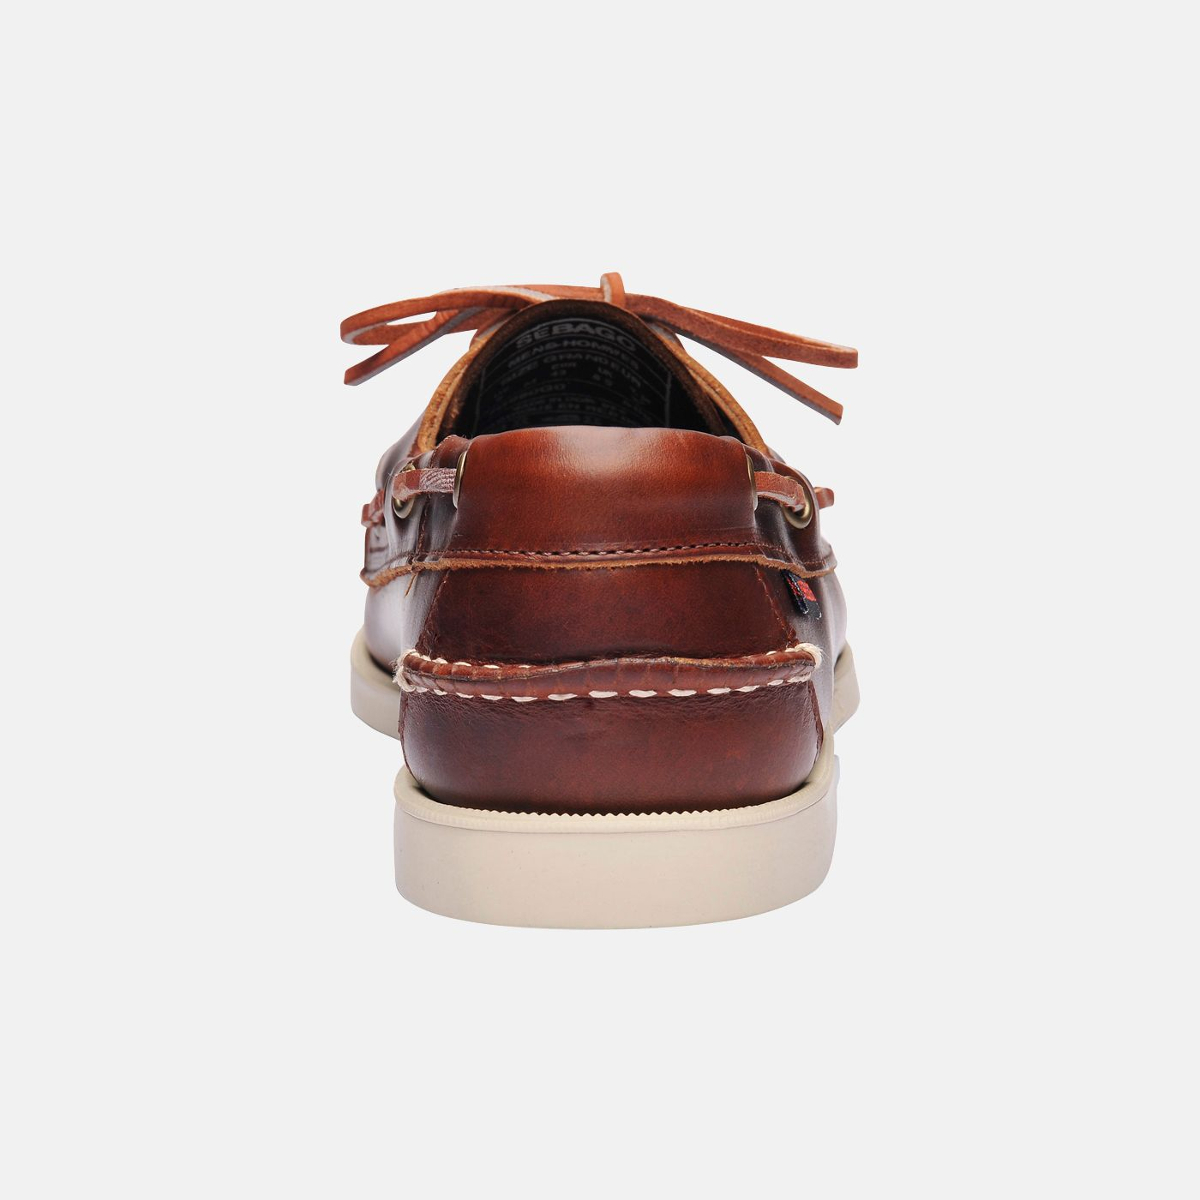 Sebago Docksides bootschoen heren brown oiled waxy leather, maat EU 41.5 (US 8)